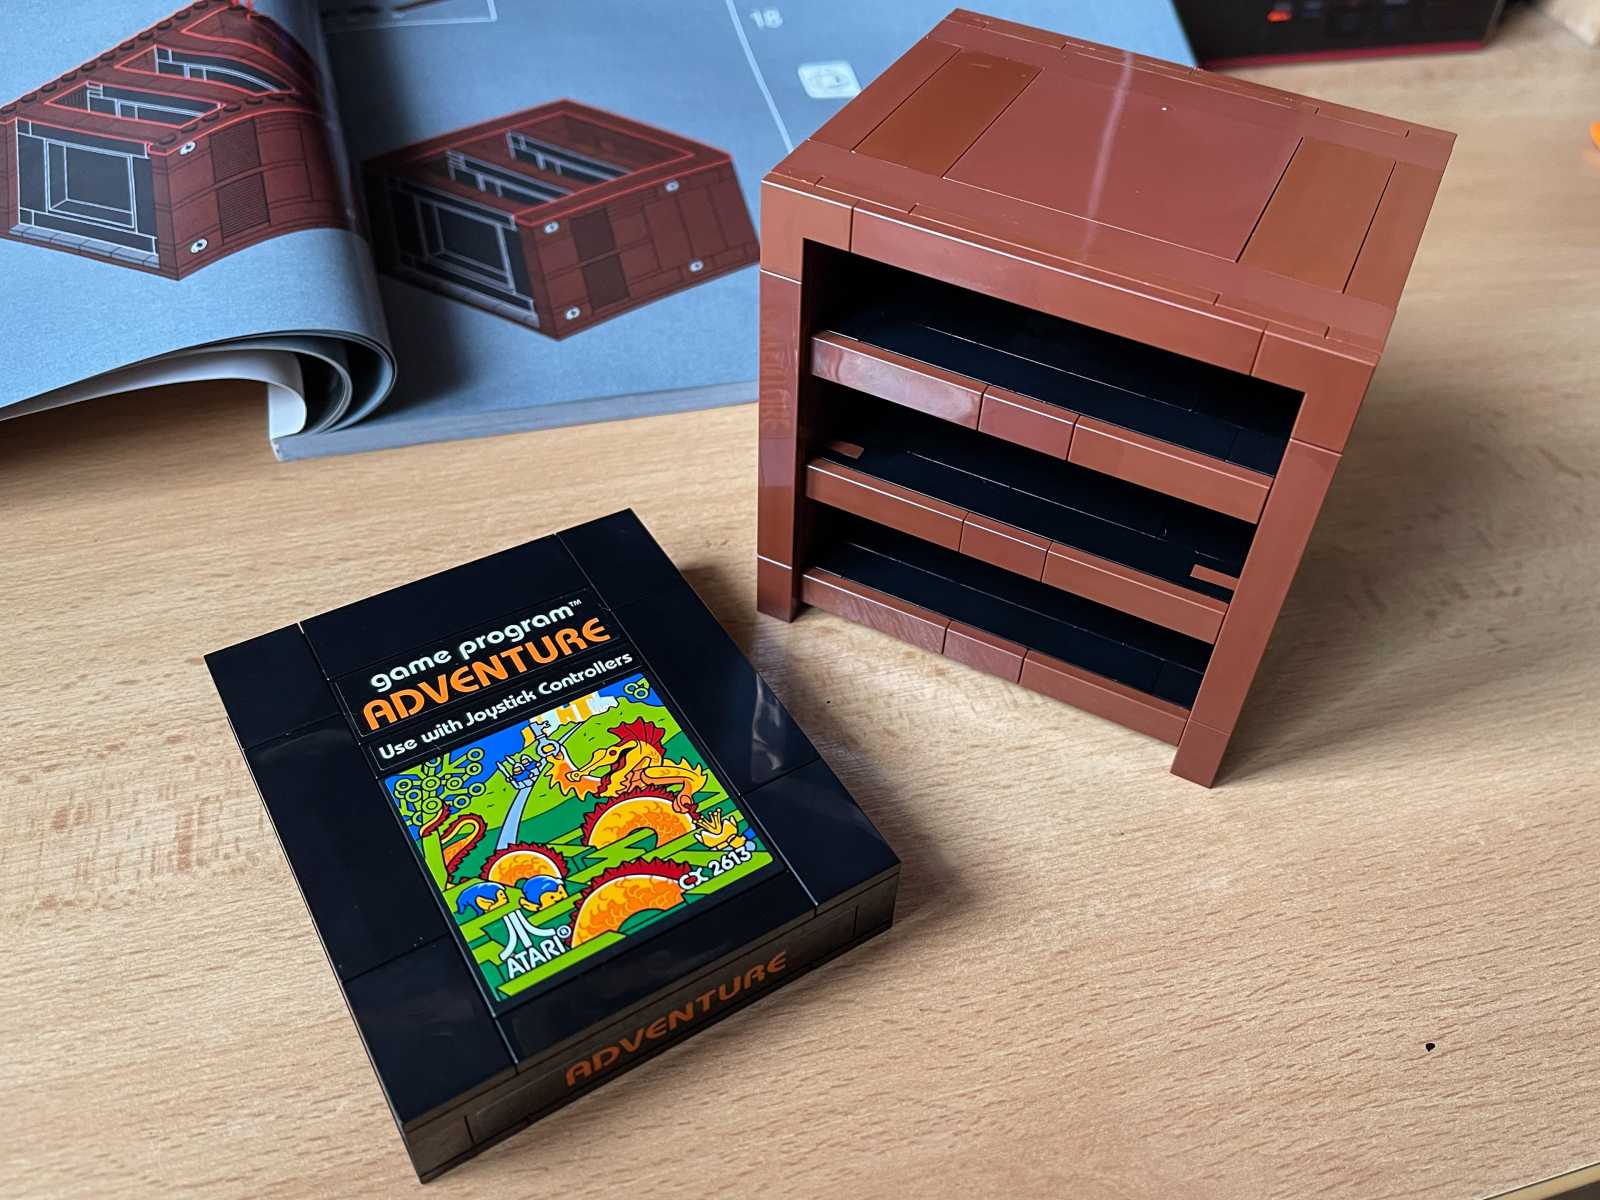 Už jste si dnes postavili své Atari? LEGO Atari VCS k 50. výročí založení firmy!